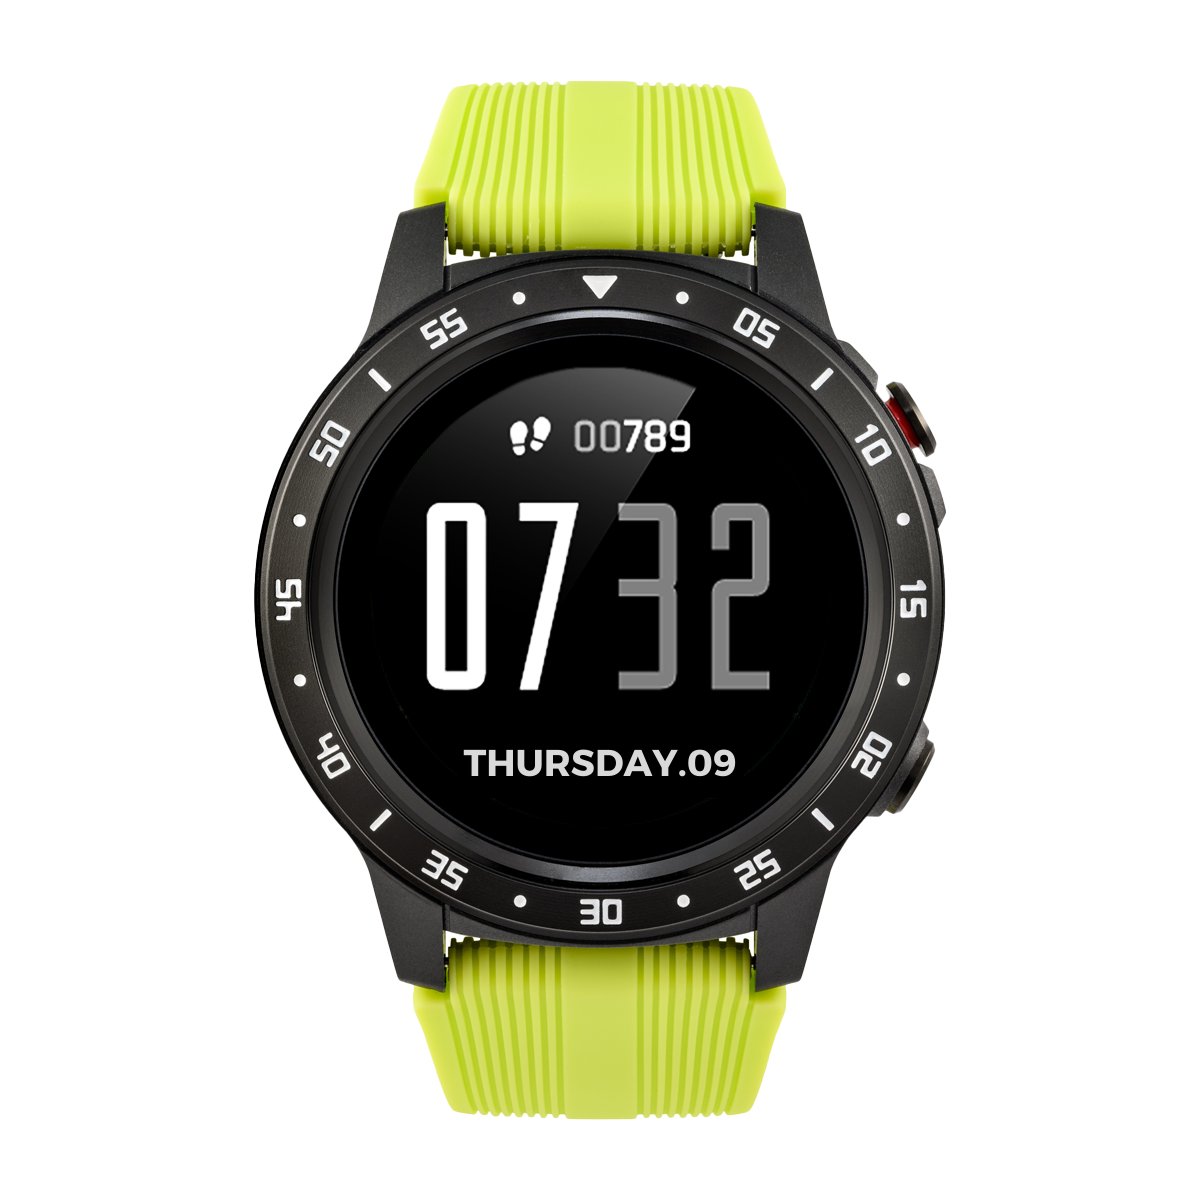 Zdjęcia - Smartwatche Watchmark Smartwatch , Outdoor WM5 GPS, Zielony 